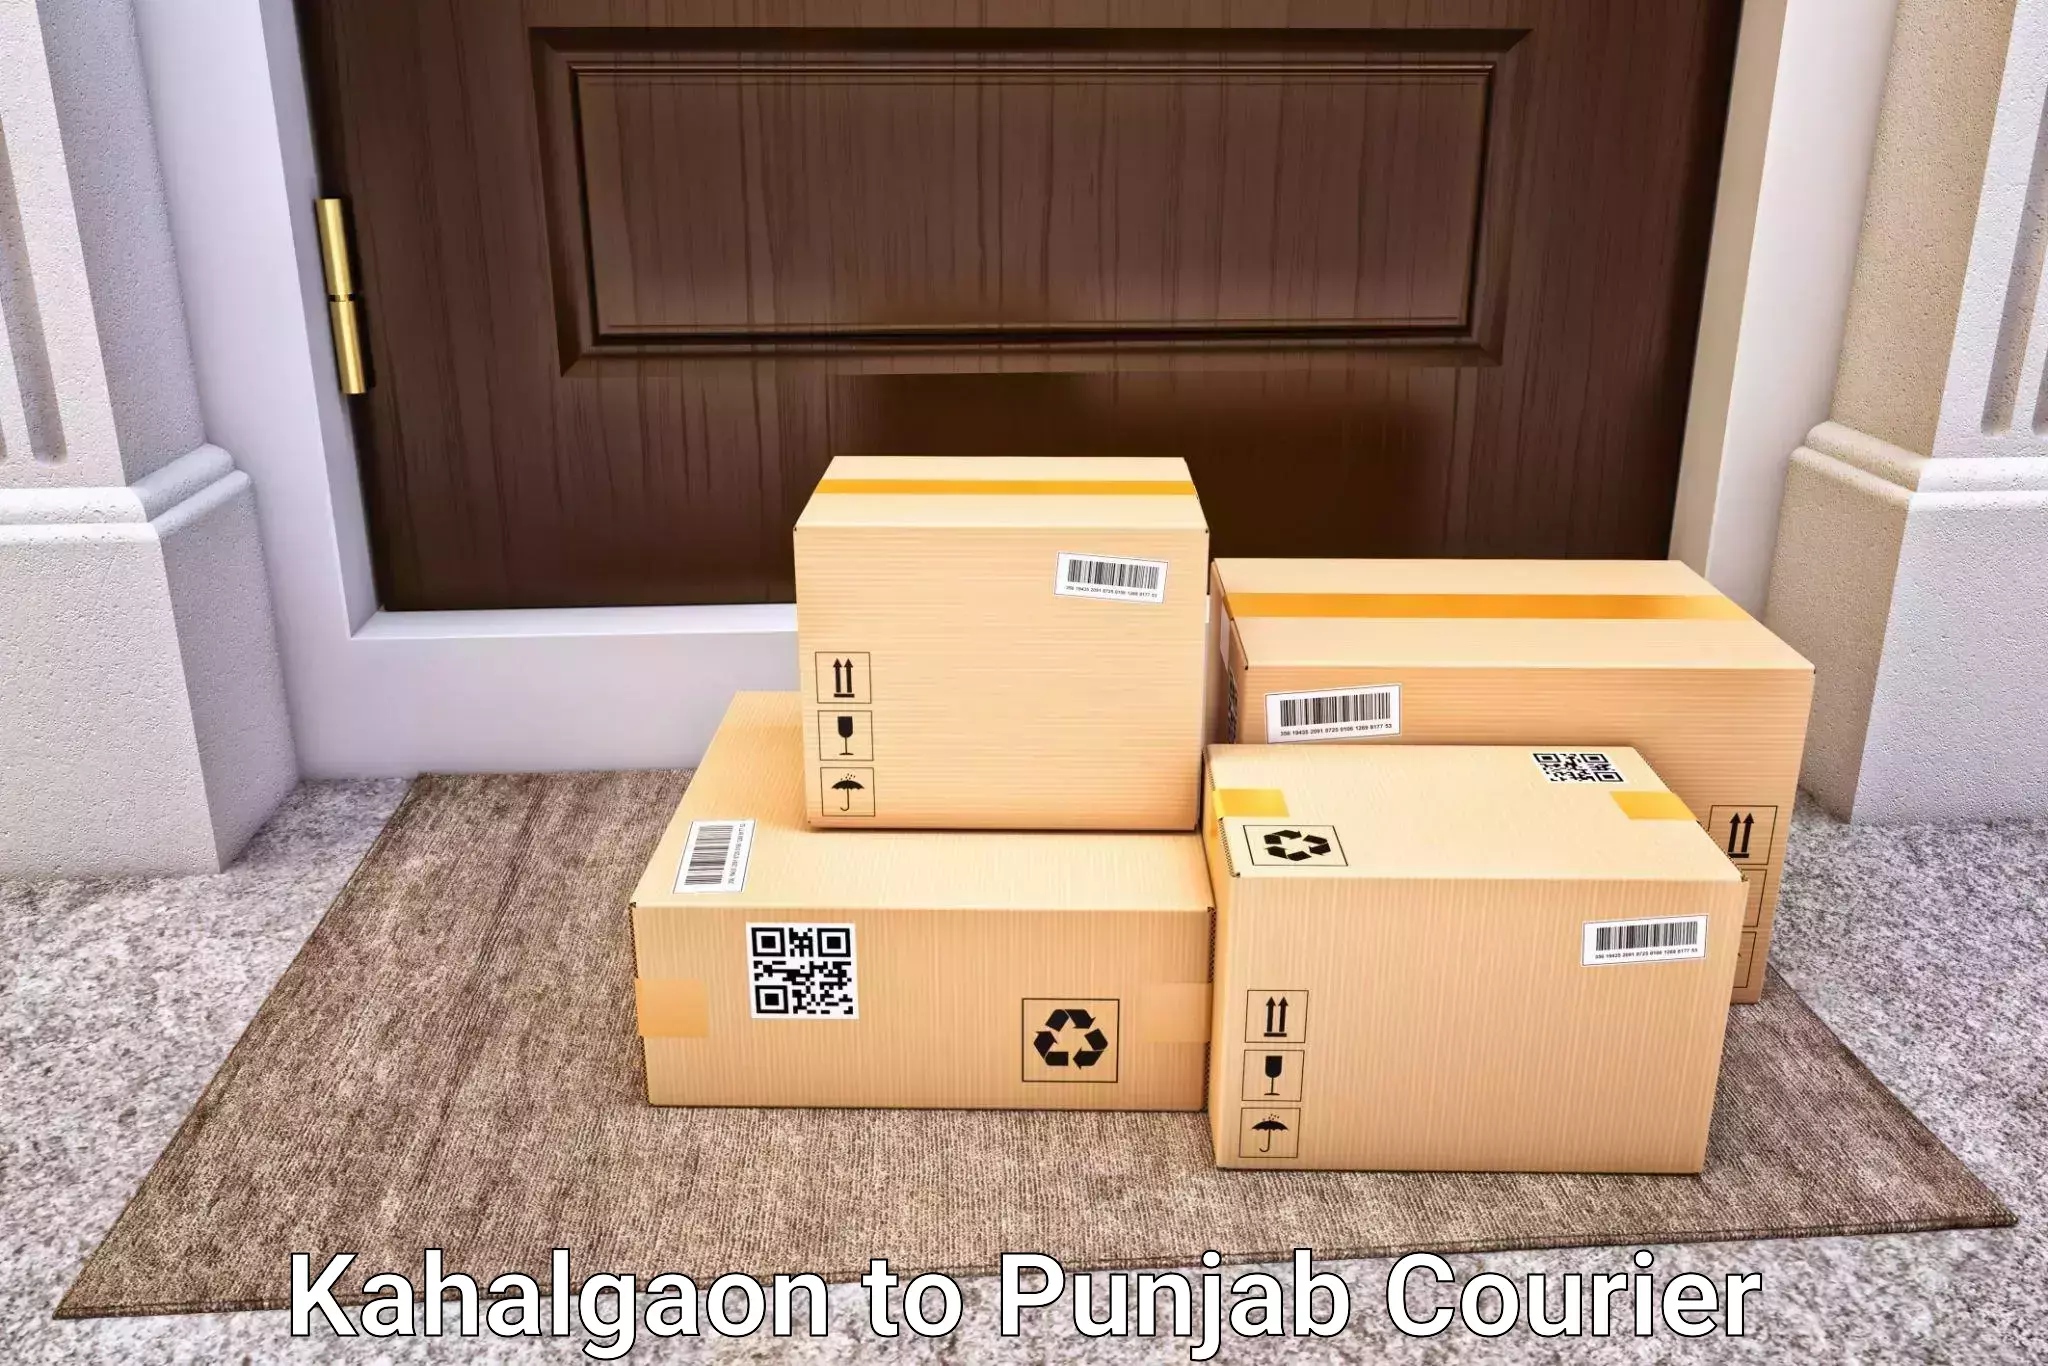 Customized luggage delivery Kahalgaon to Zirakpur